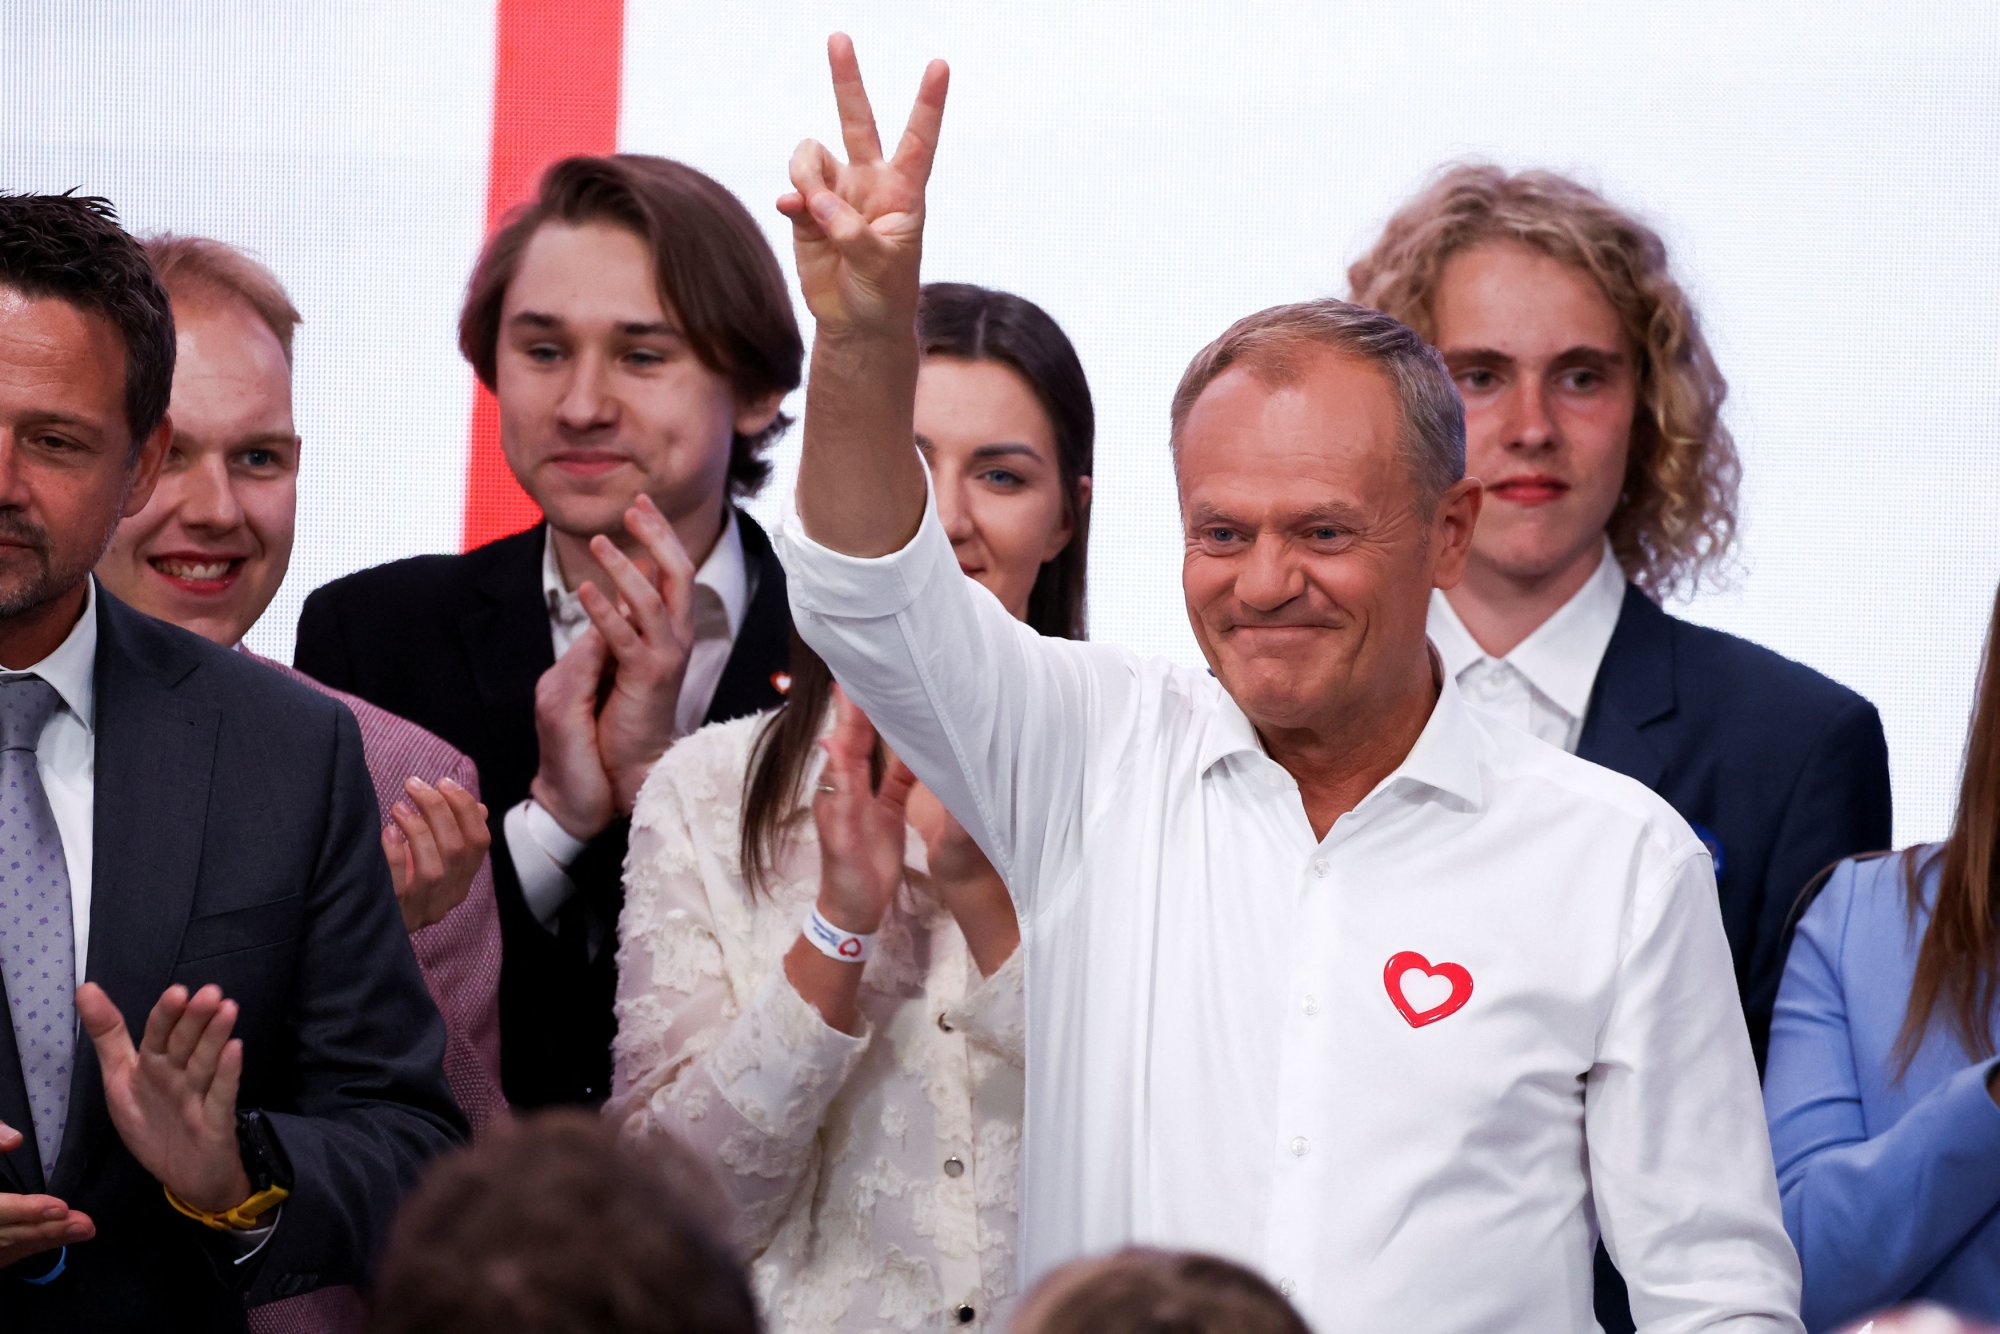 Πολωνία - ευρωεκλογές: Πρωτιά για το κόμμα του Πρωθυπουργού, Ντόναλτ Τουσκ